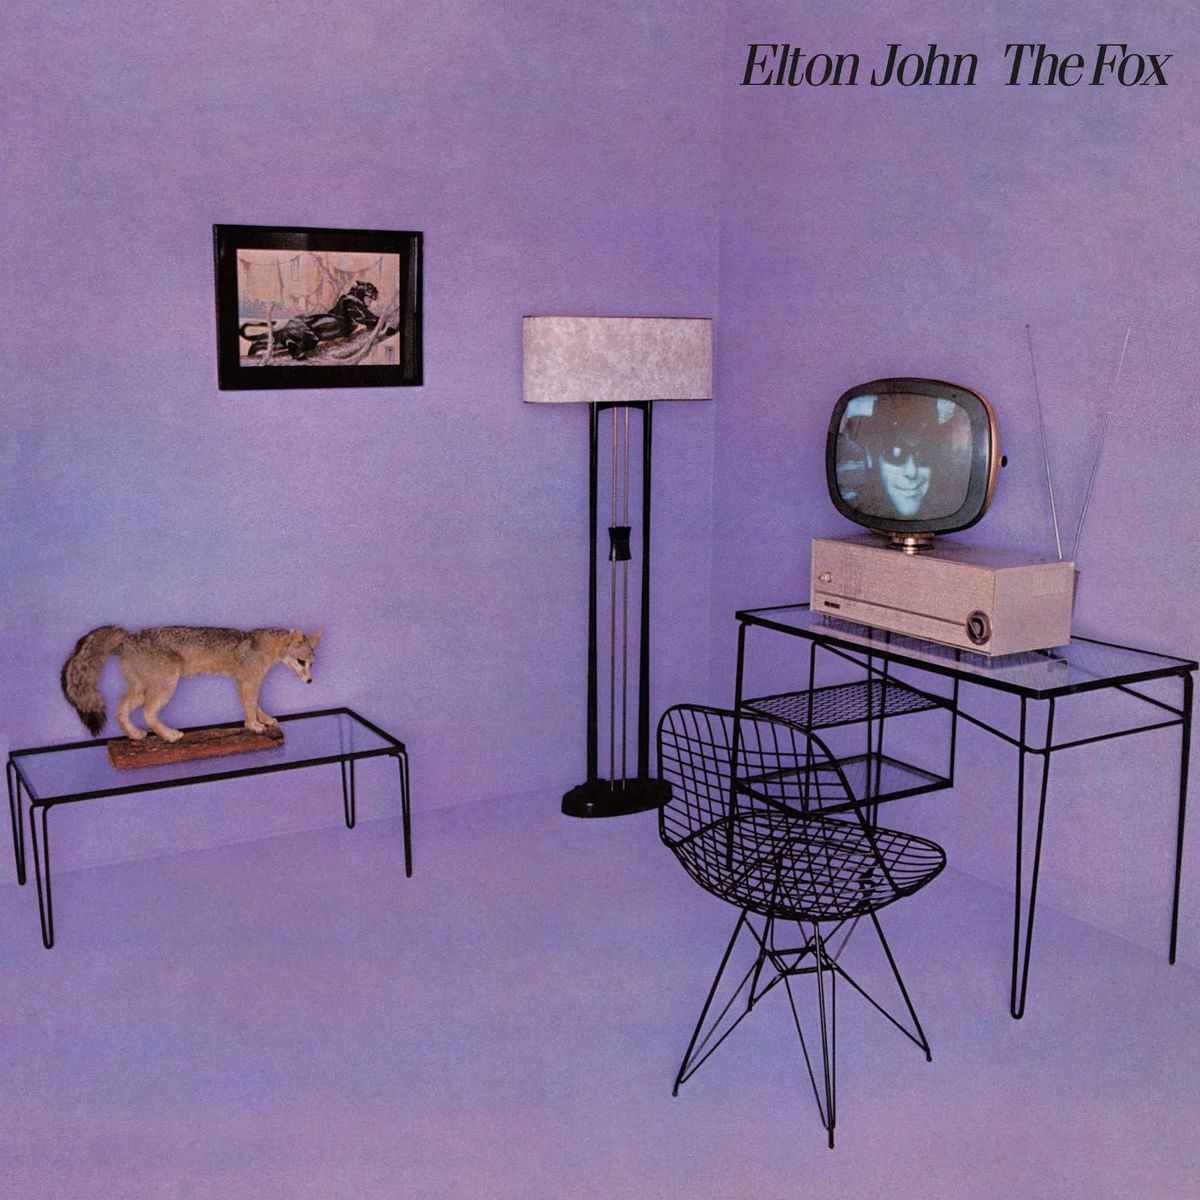 Disques vinyle Pop Rock Universal Elton John - The Fox Édition limitée